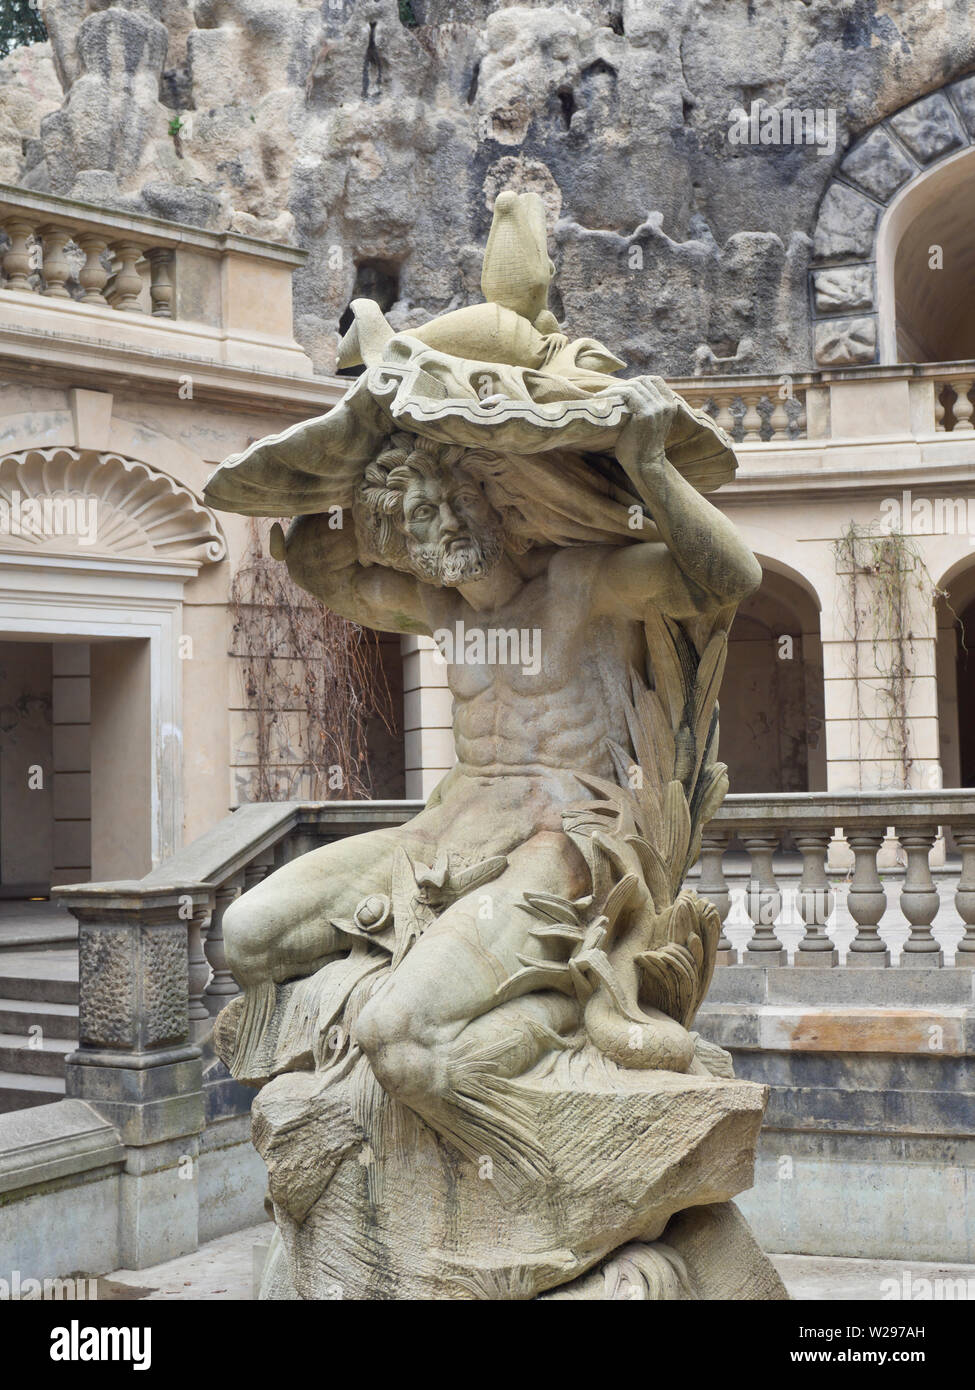 Grotta, Jugendstil Brunnen im Bau, die sady Havlíčkovy Havlicek Gärten in Prag in der Tschechischen Republik Skulptur detail Stockfoto